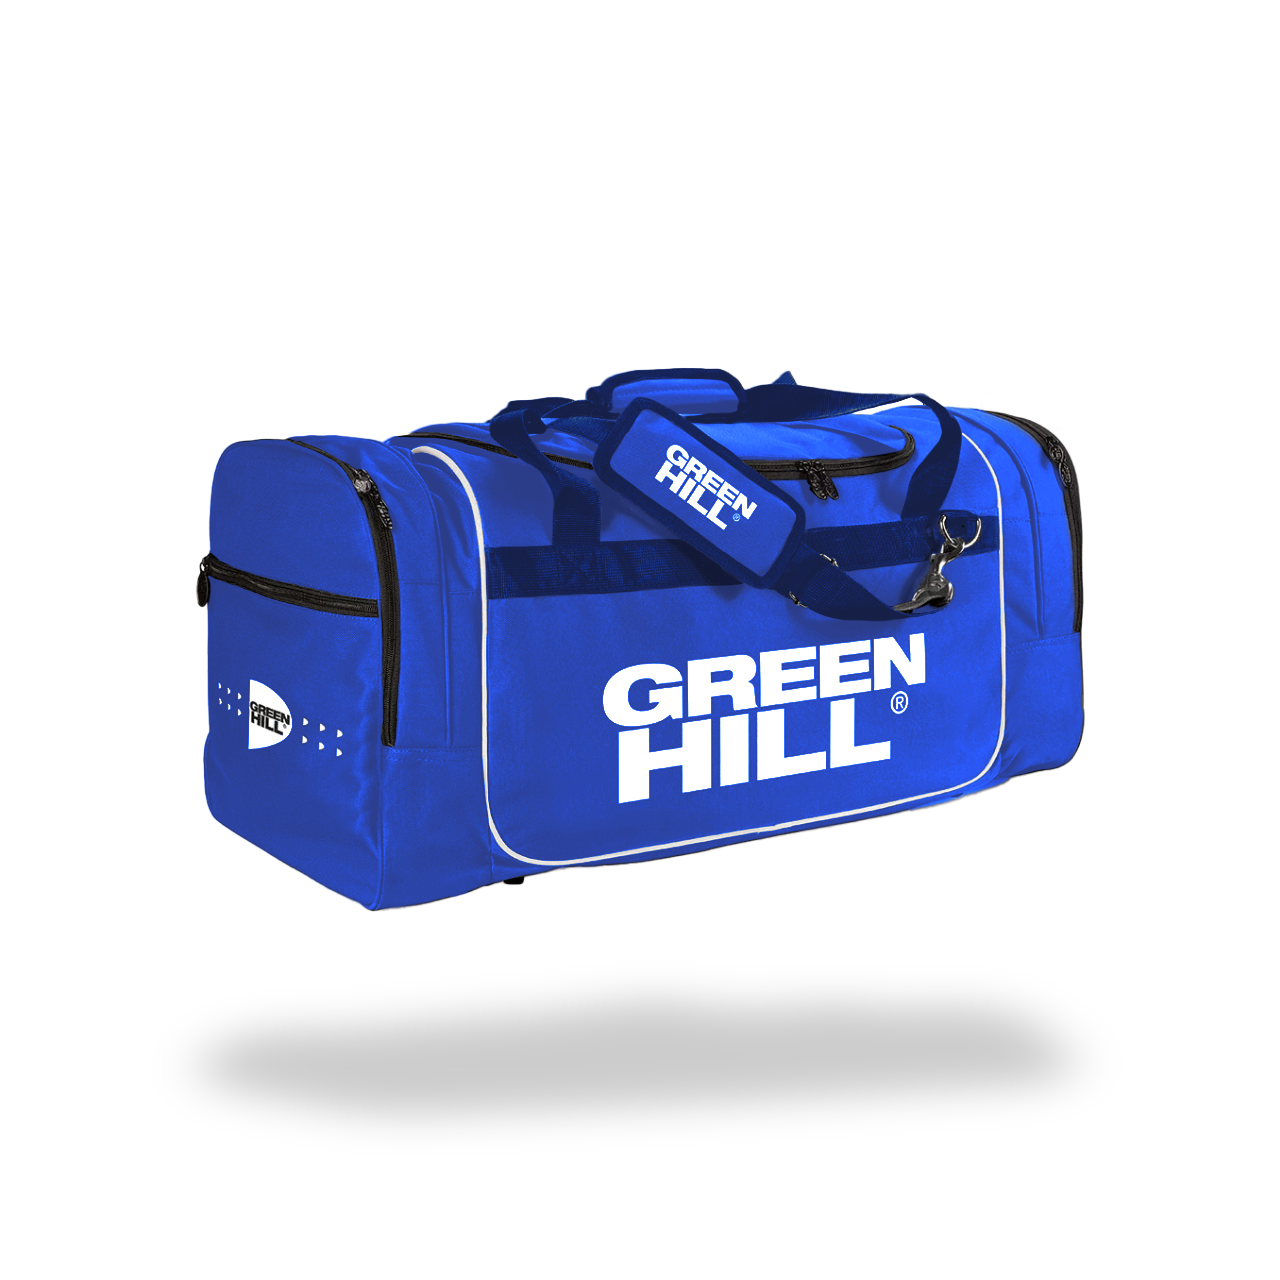 Green Hill Judotrainingstasche in Blau mit Stauraum für die gesamte Trainingsausrüstung. 2 zusätzlichen seitlichen Reißverschlusstaschen. Unterschiedlichen Größen.